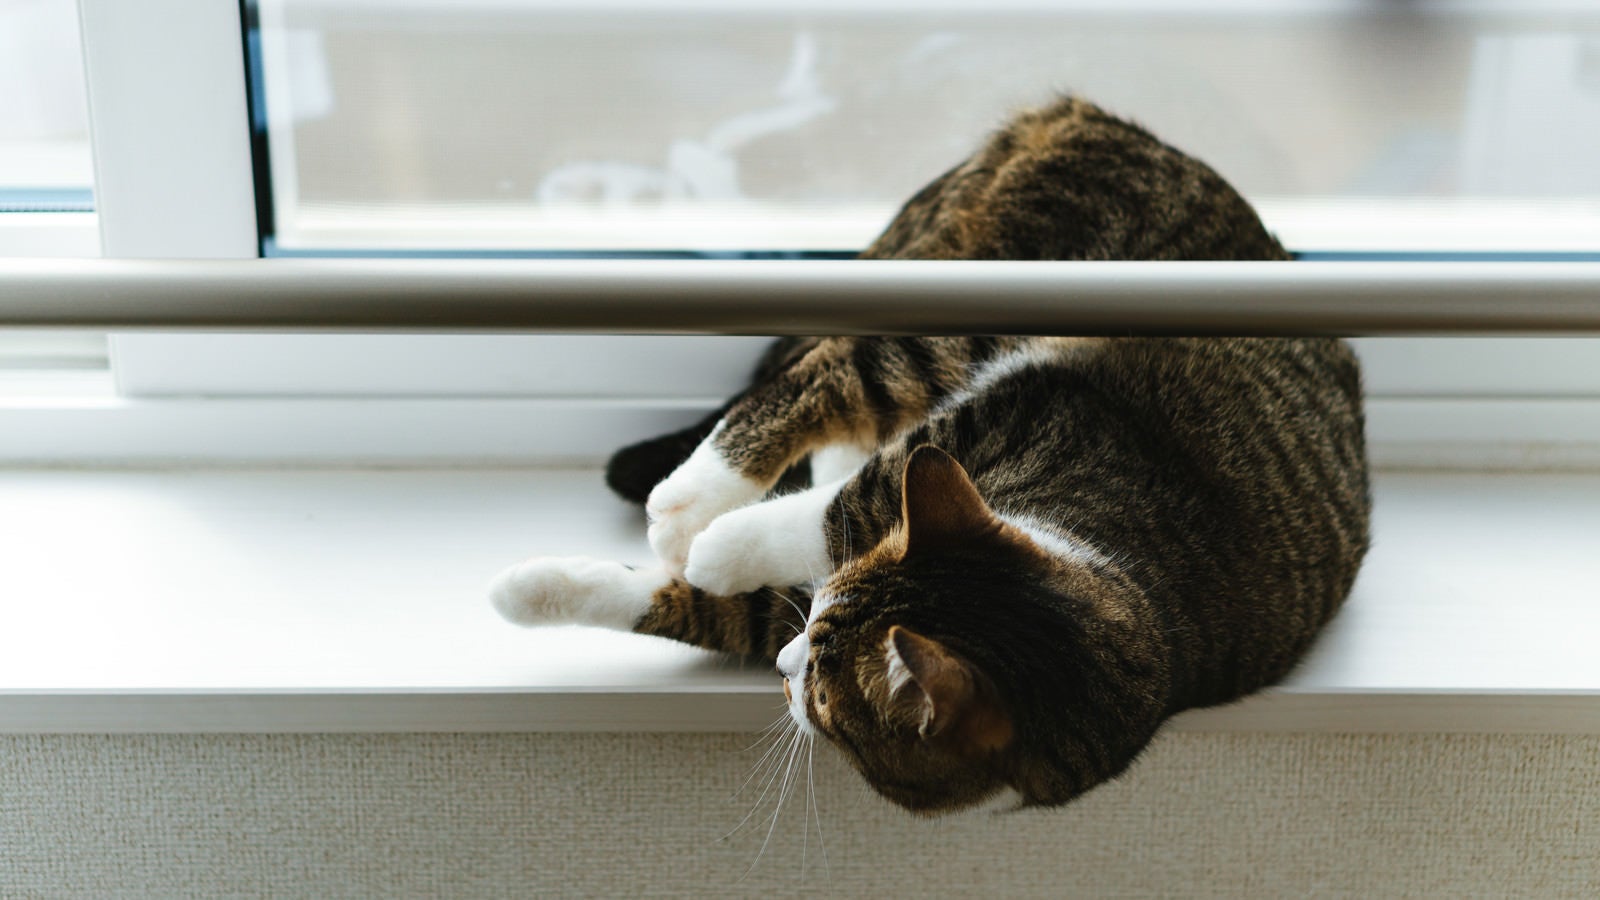 「出窓でゴロ寝する猫」の写真